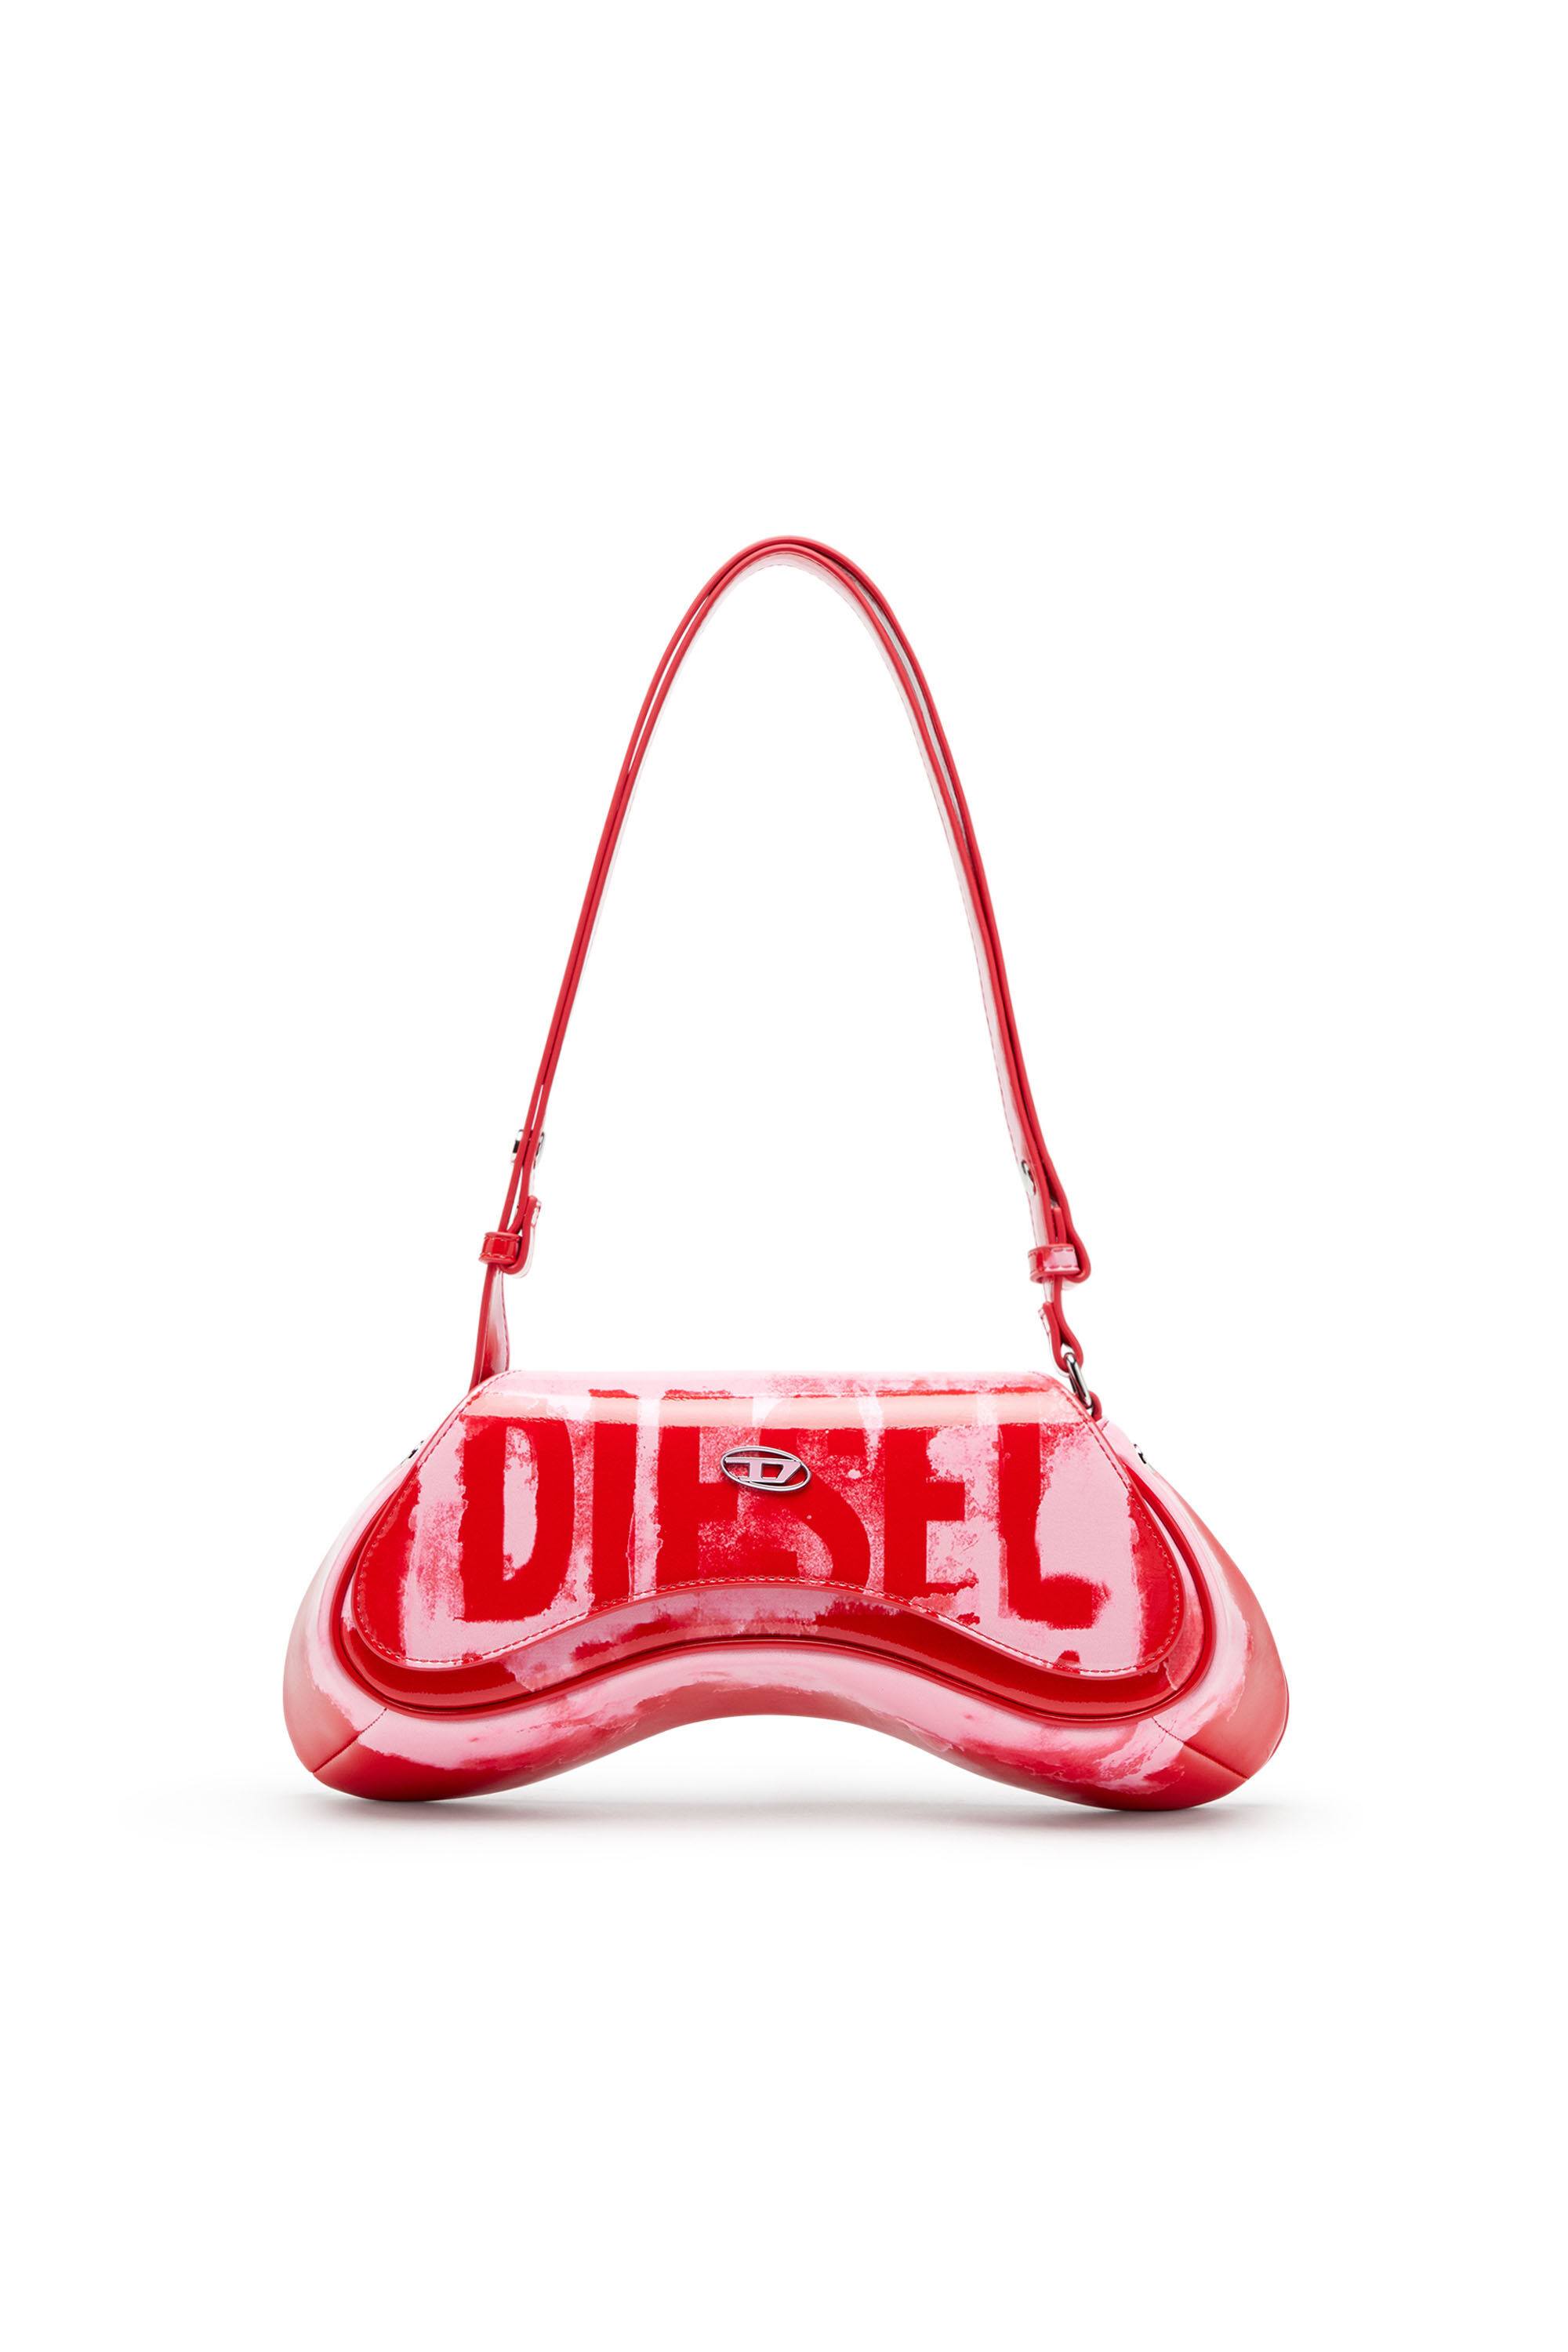 Diesel - PLAY CROSSBODY, Rose/Rouge - Image 1